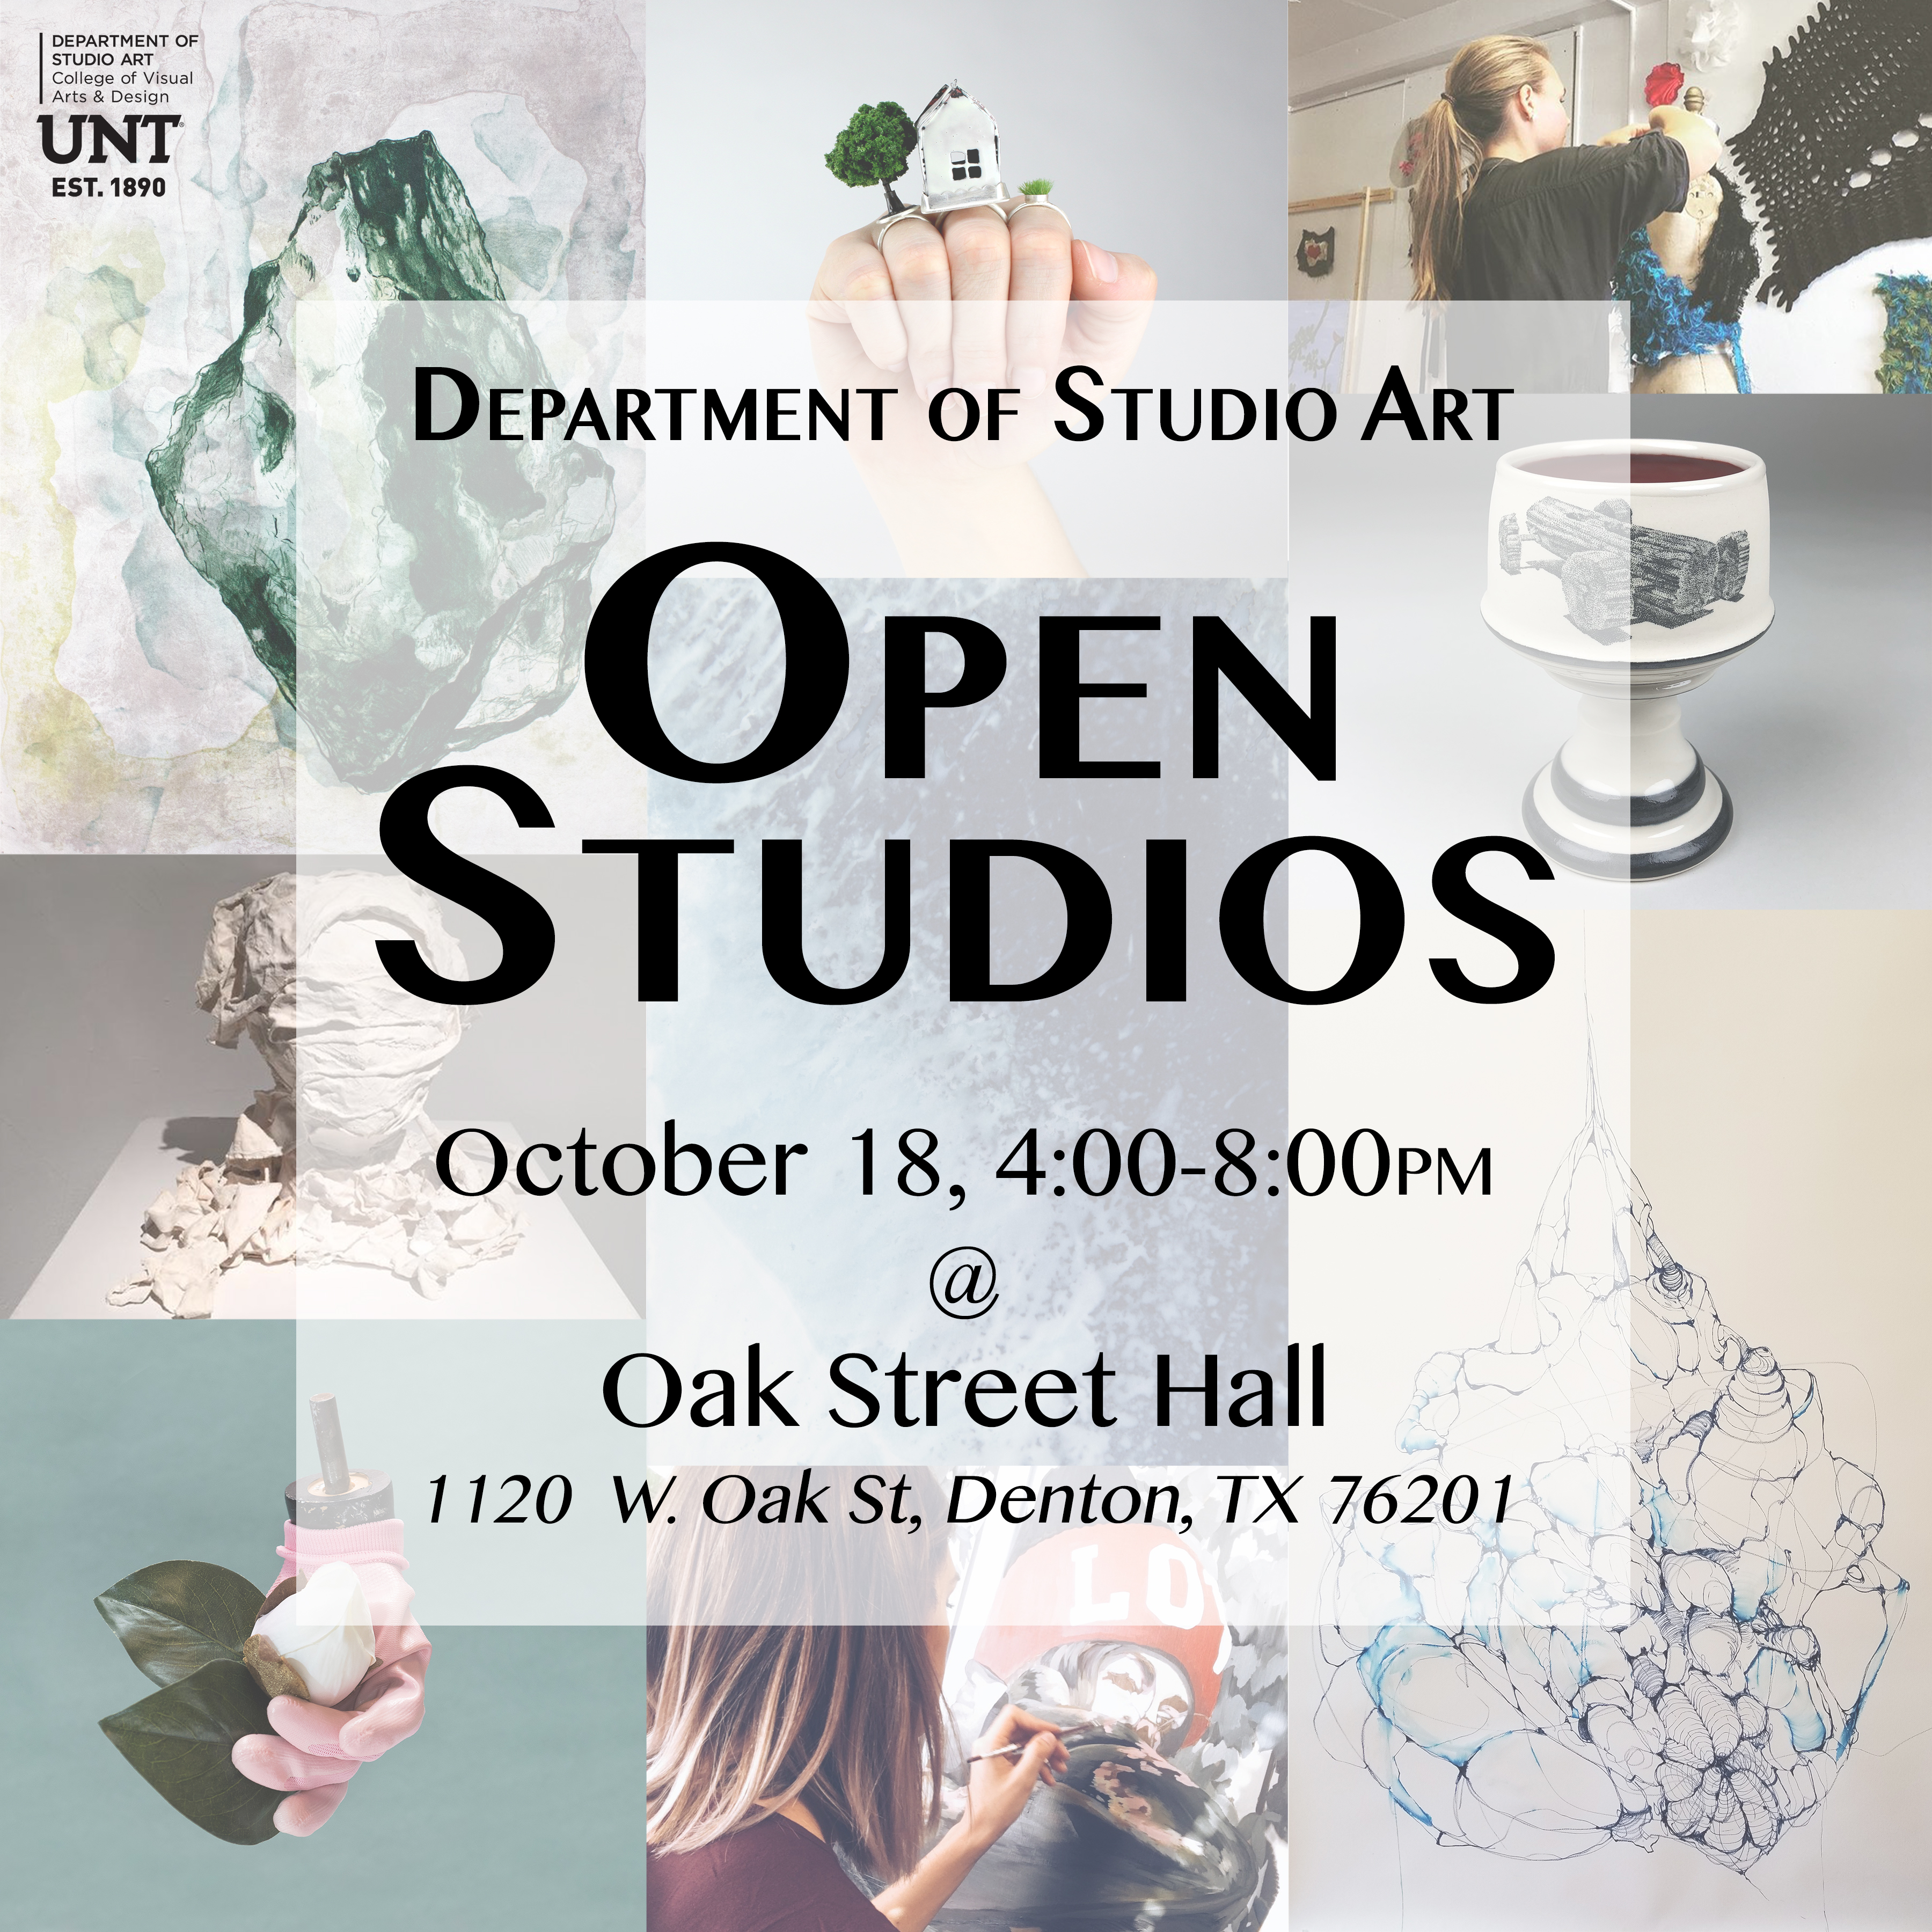 UNT Department of Studio Art graduate students will exhibit their work in an open studio event